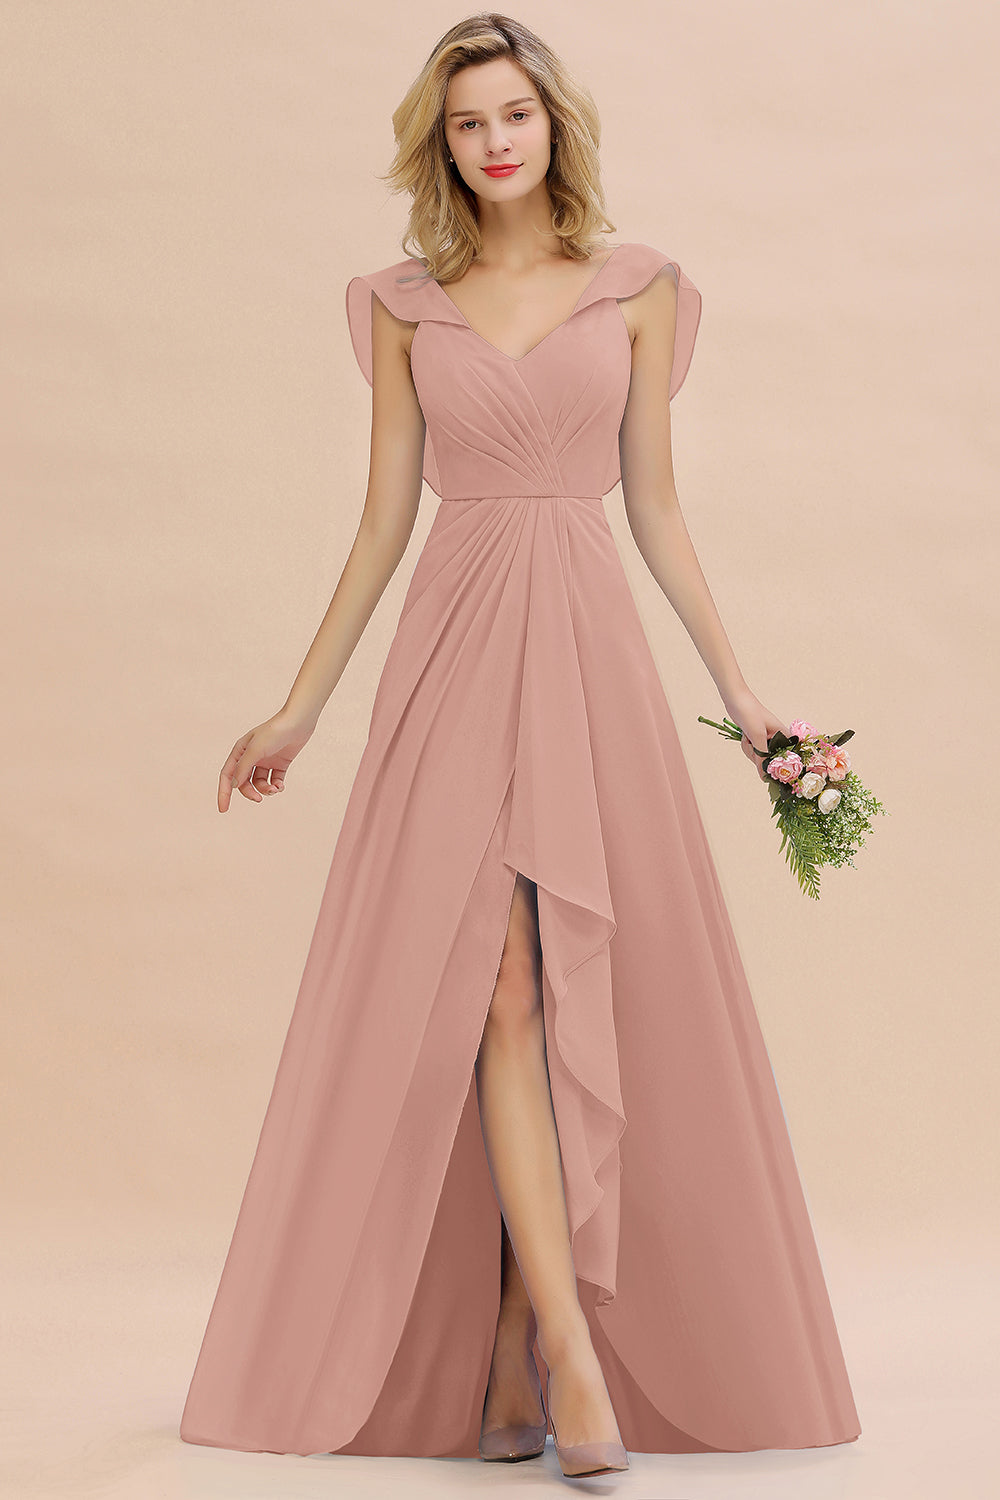 Modest Hi-Lo V-Neck Ruffle Long Bridesmaid Dress with Slit